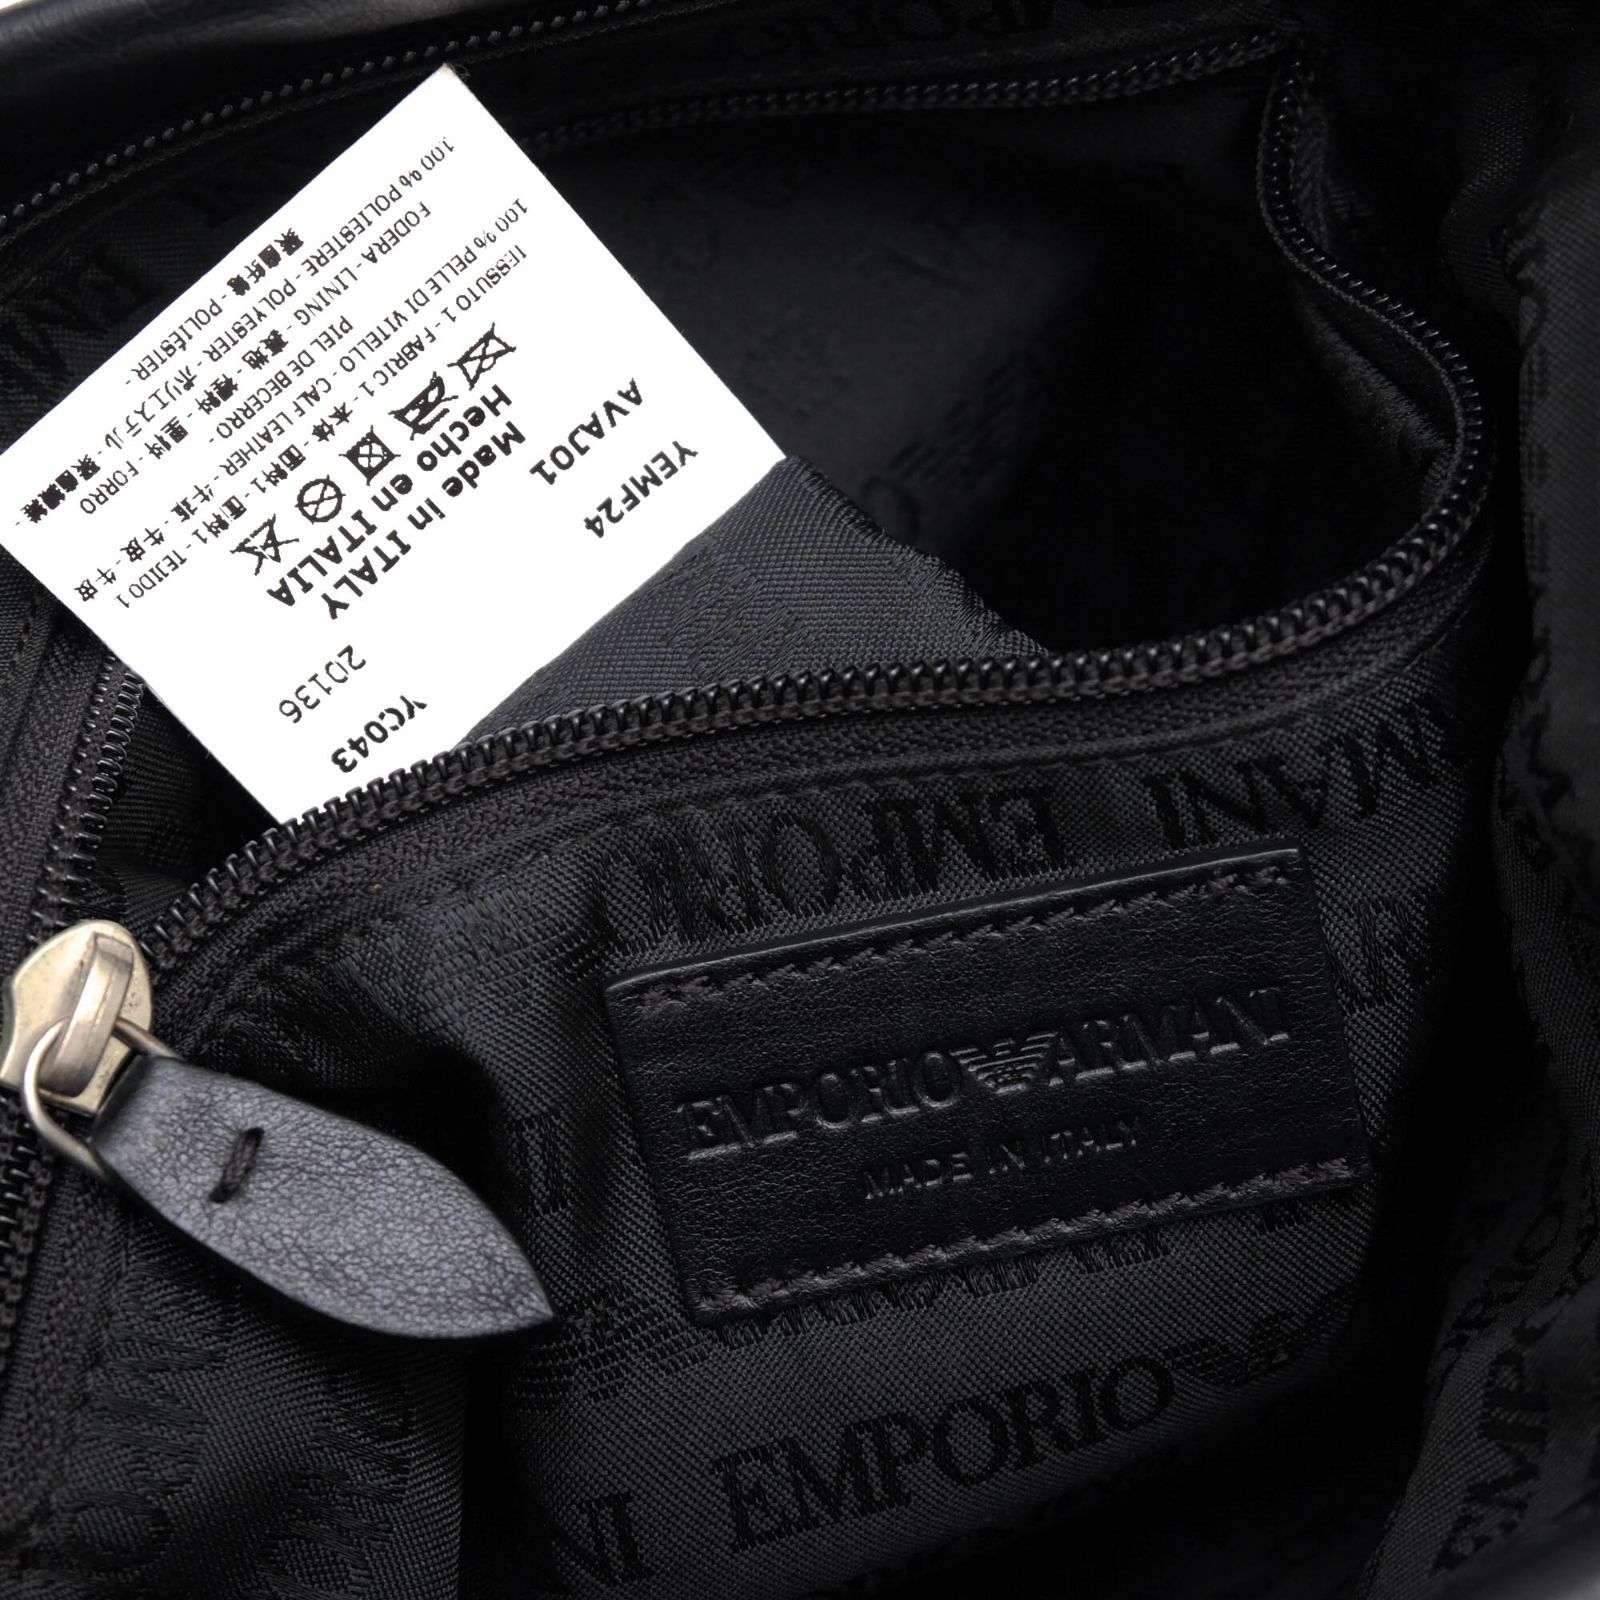 アルマーニ／EMPORIO ARMANI バッグ ショルダーバッグ 鞄 メンズ 男性 男性用レザー 革 本革 ブラック 黒  YC043 YEMF24 イーグル型押し加工 メッセンジャーバッグ